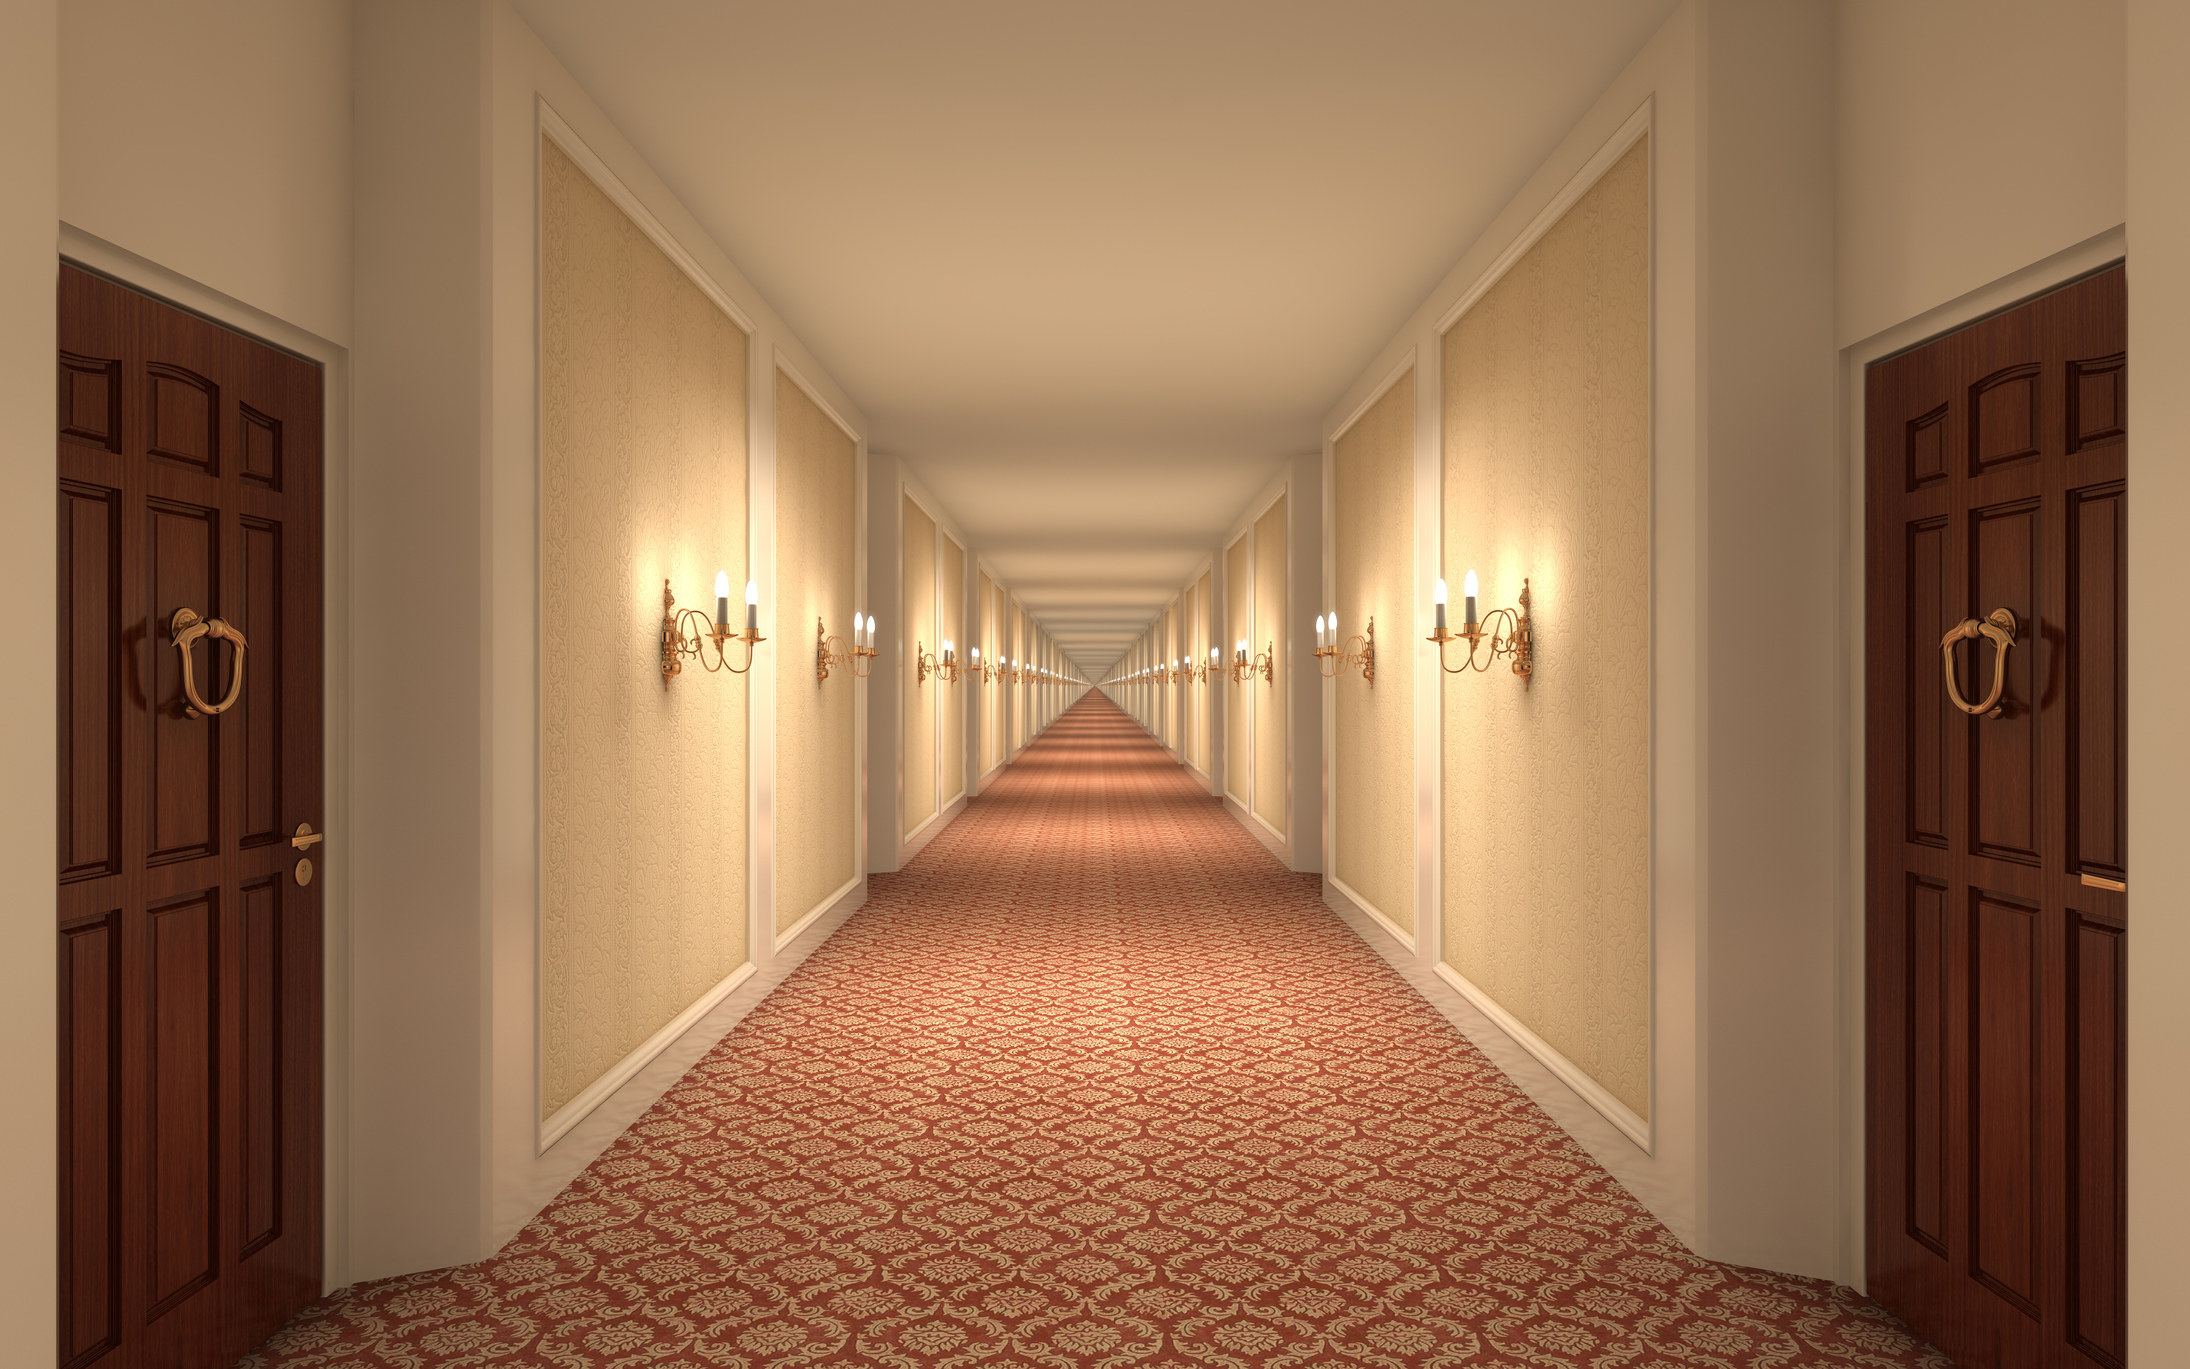 A long hotel hallway.